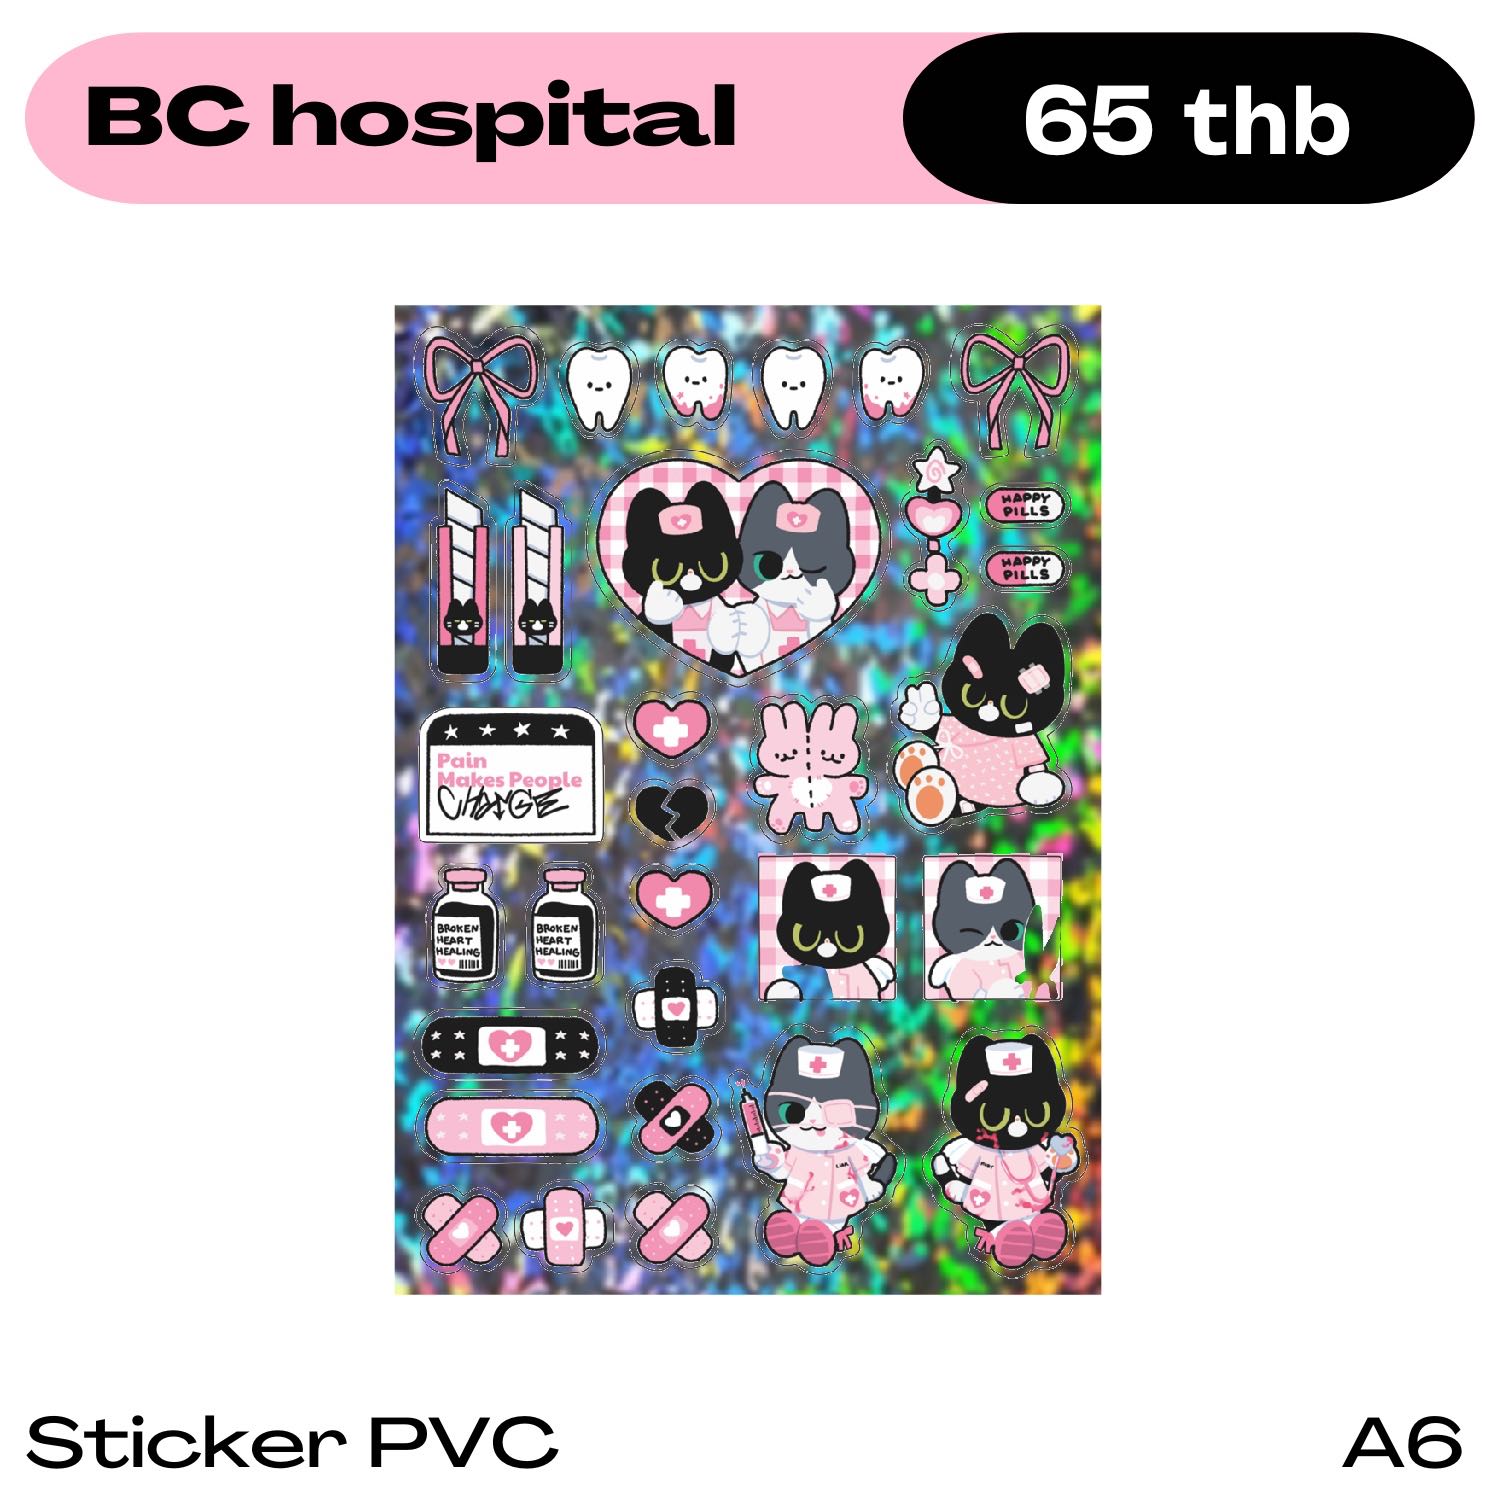 BC hospital (No restock)